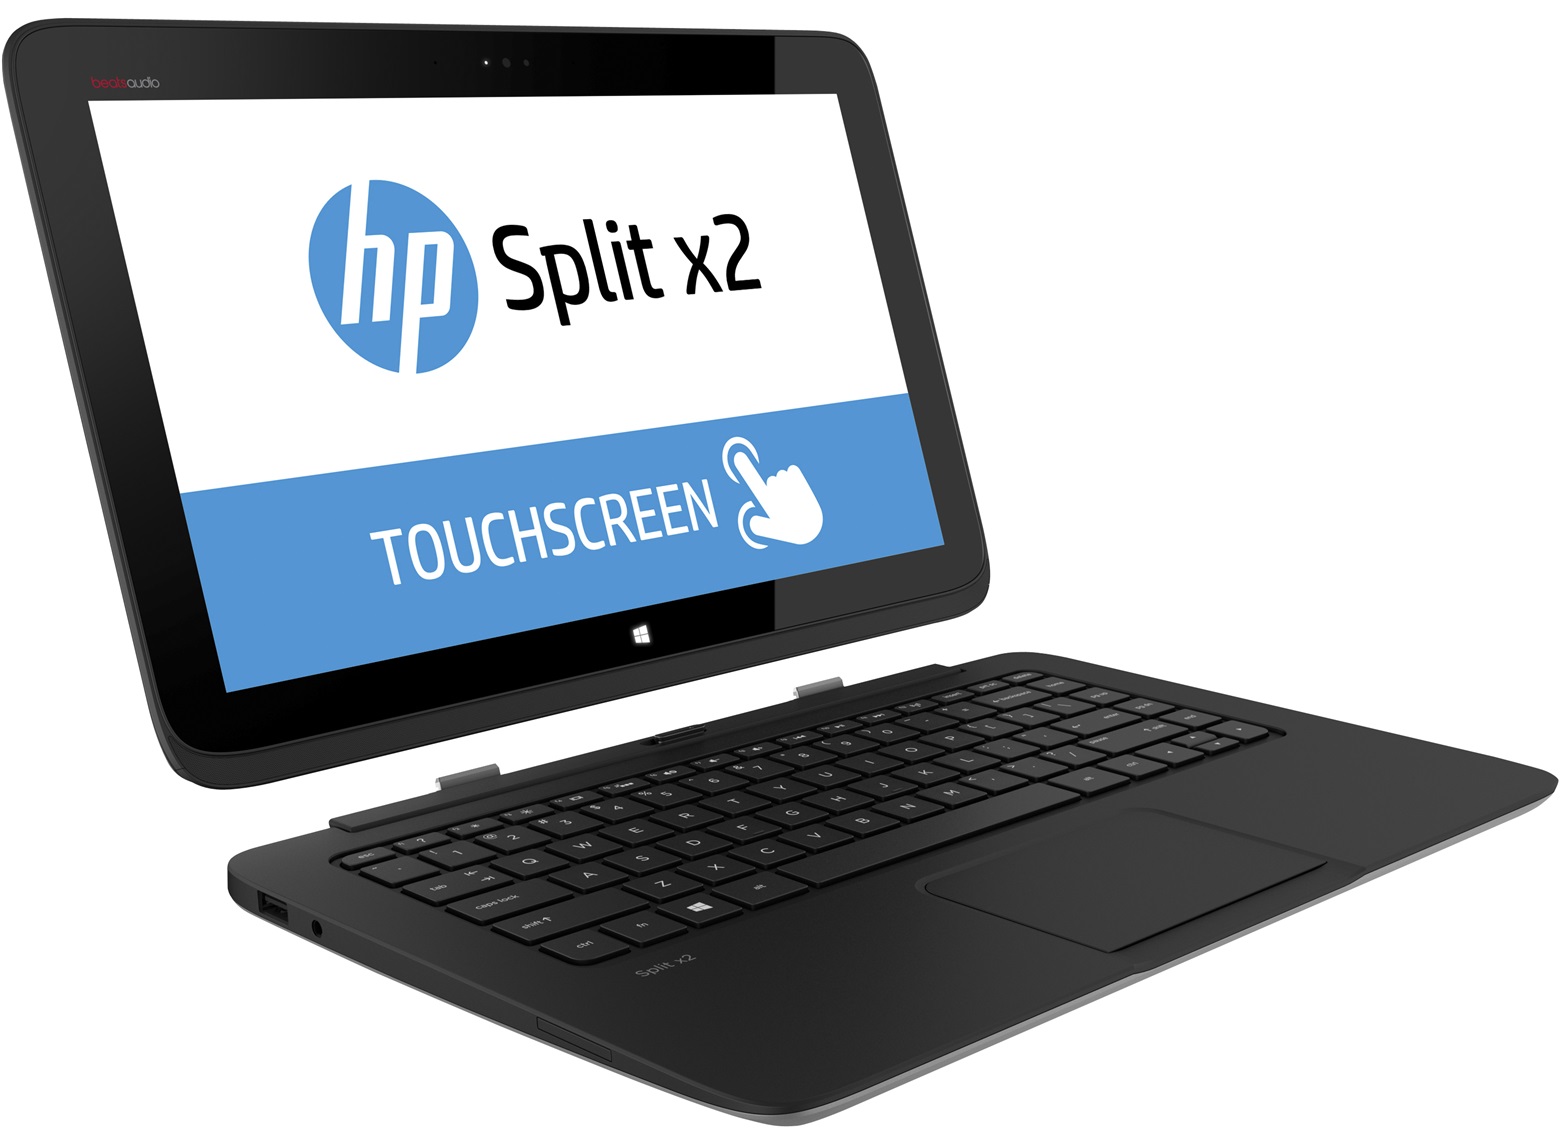 HP-Split-x2-tablet-ve-dizustu-bilgisayar